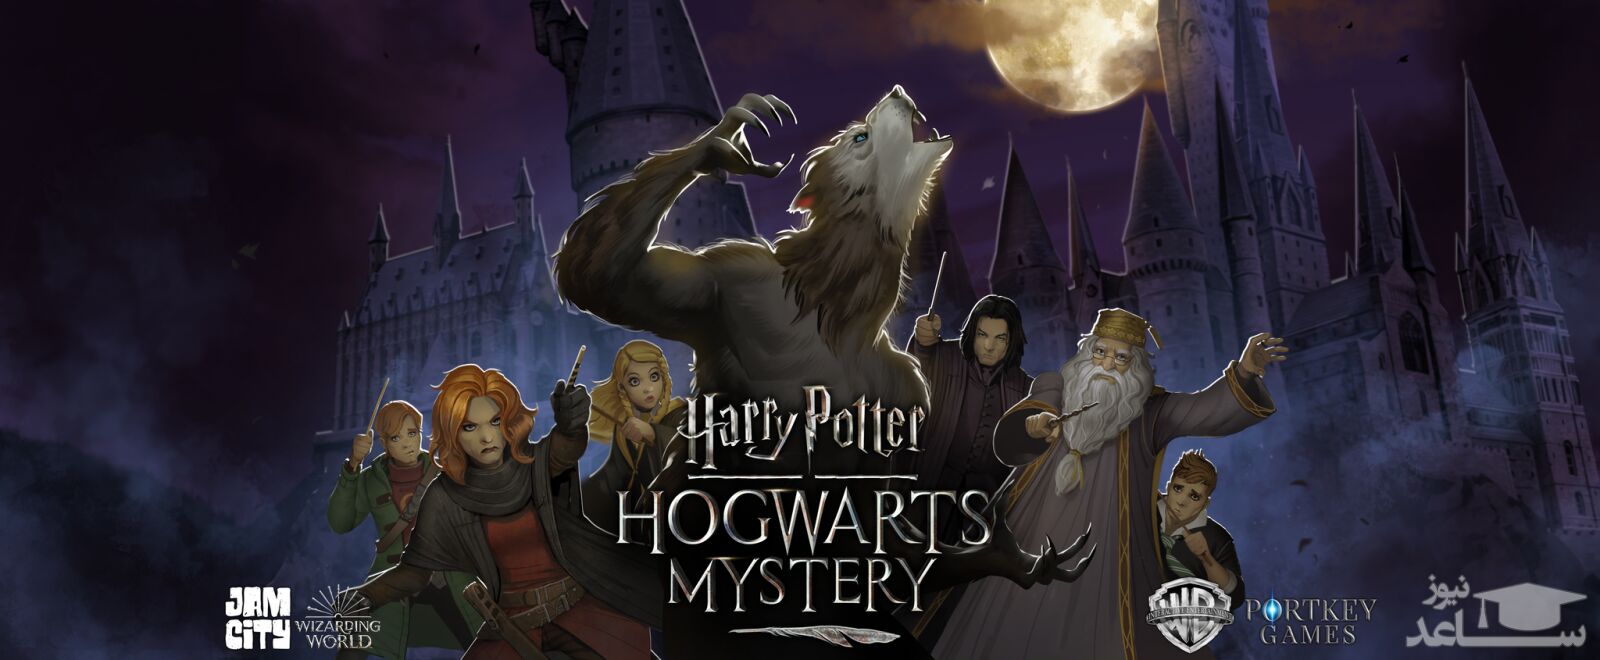 معرفی و بررسی یک بازی جذاب به نام Harry Potter : Hogowarts Mystry + دانلود